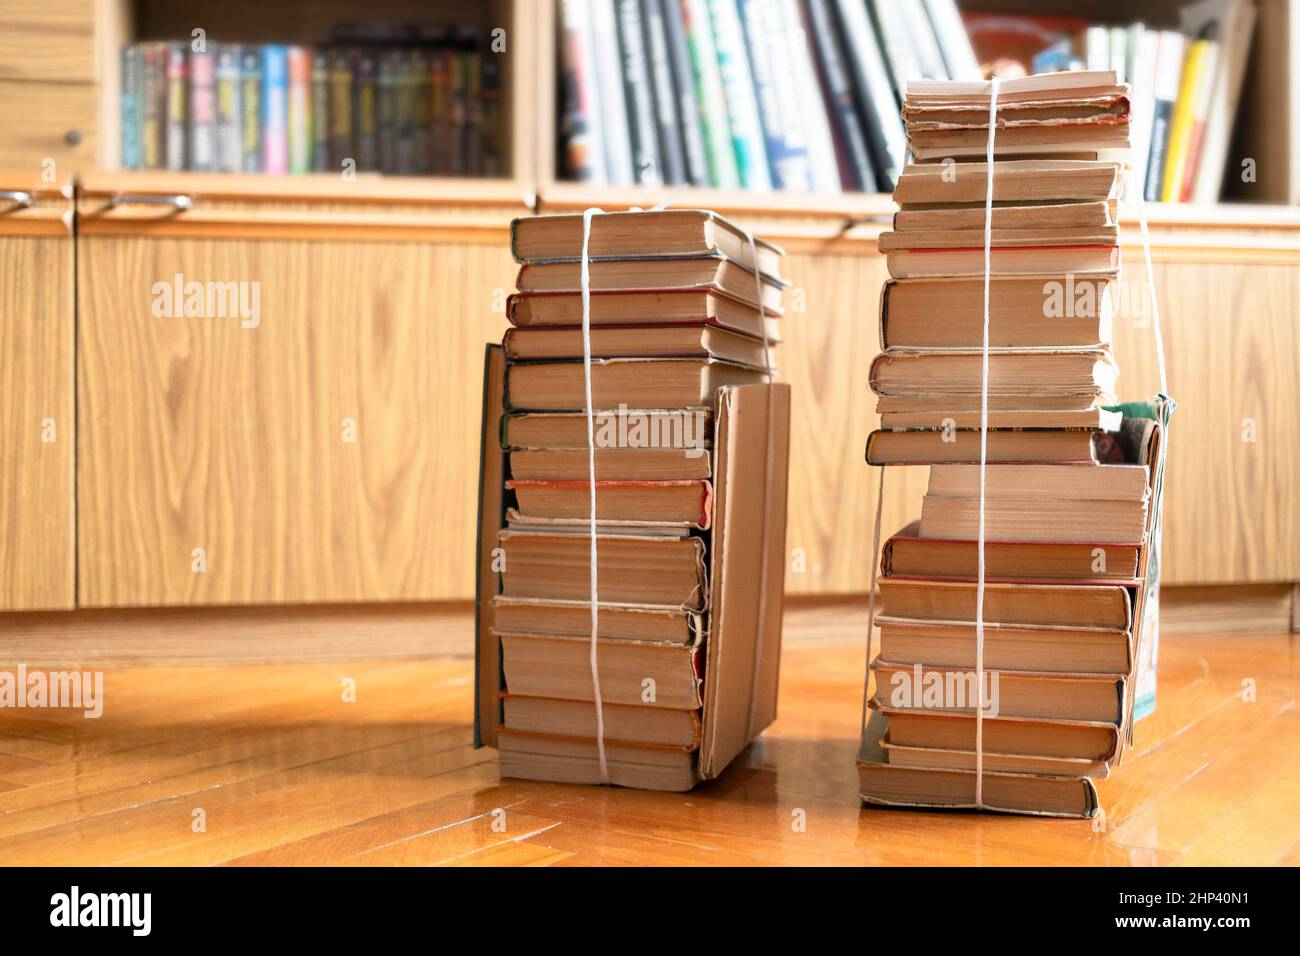 Zwei Stapel gebrauchter Bücher, die mit Verpackungsfaden auf Parkettboden im Wohnzimmer neben dem Bibliotheksschrank gebunden sind Stockfoto